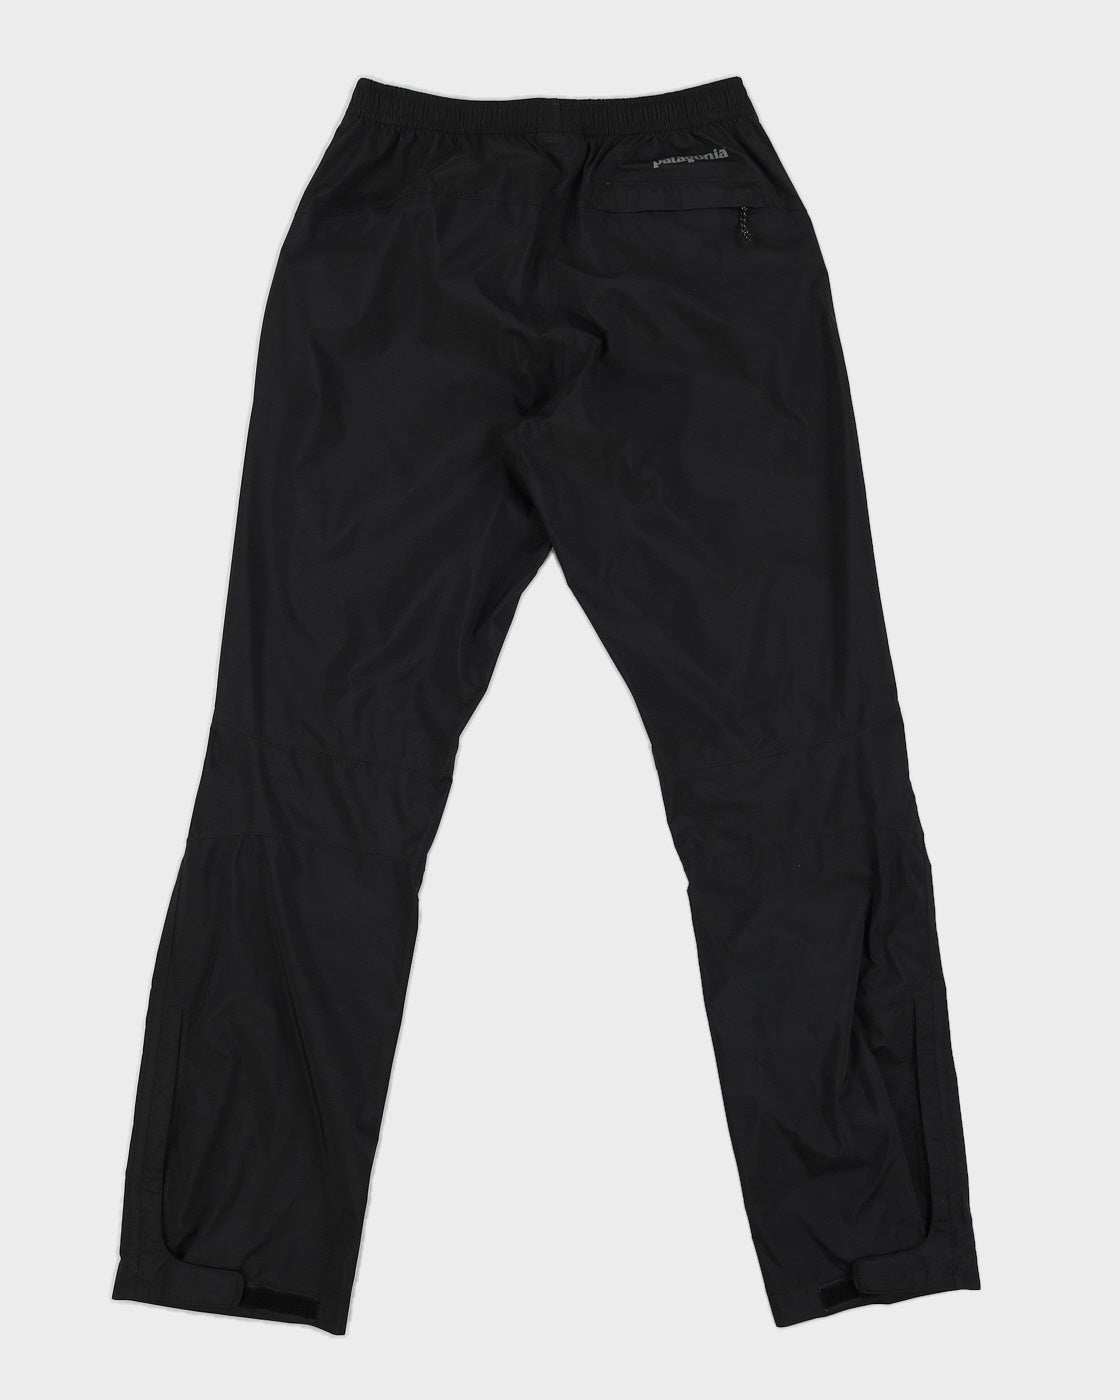 Patagonia Black Nylon Utility Trousers - XS